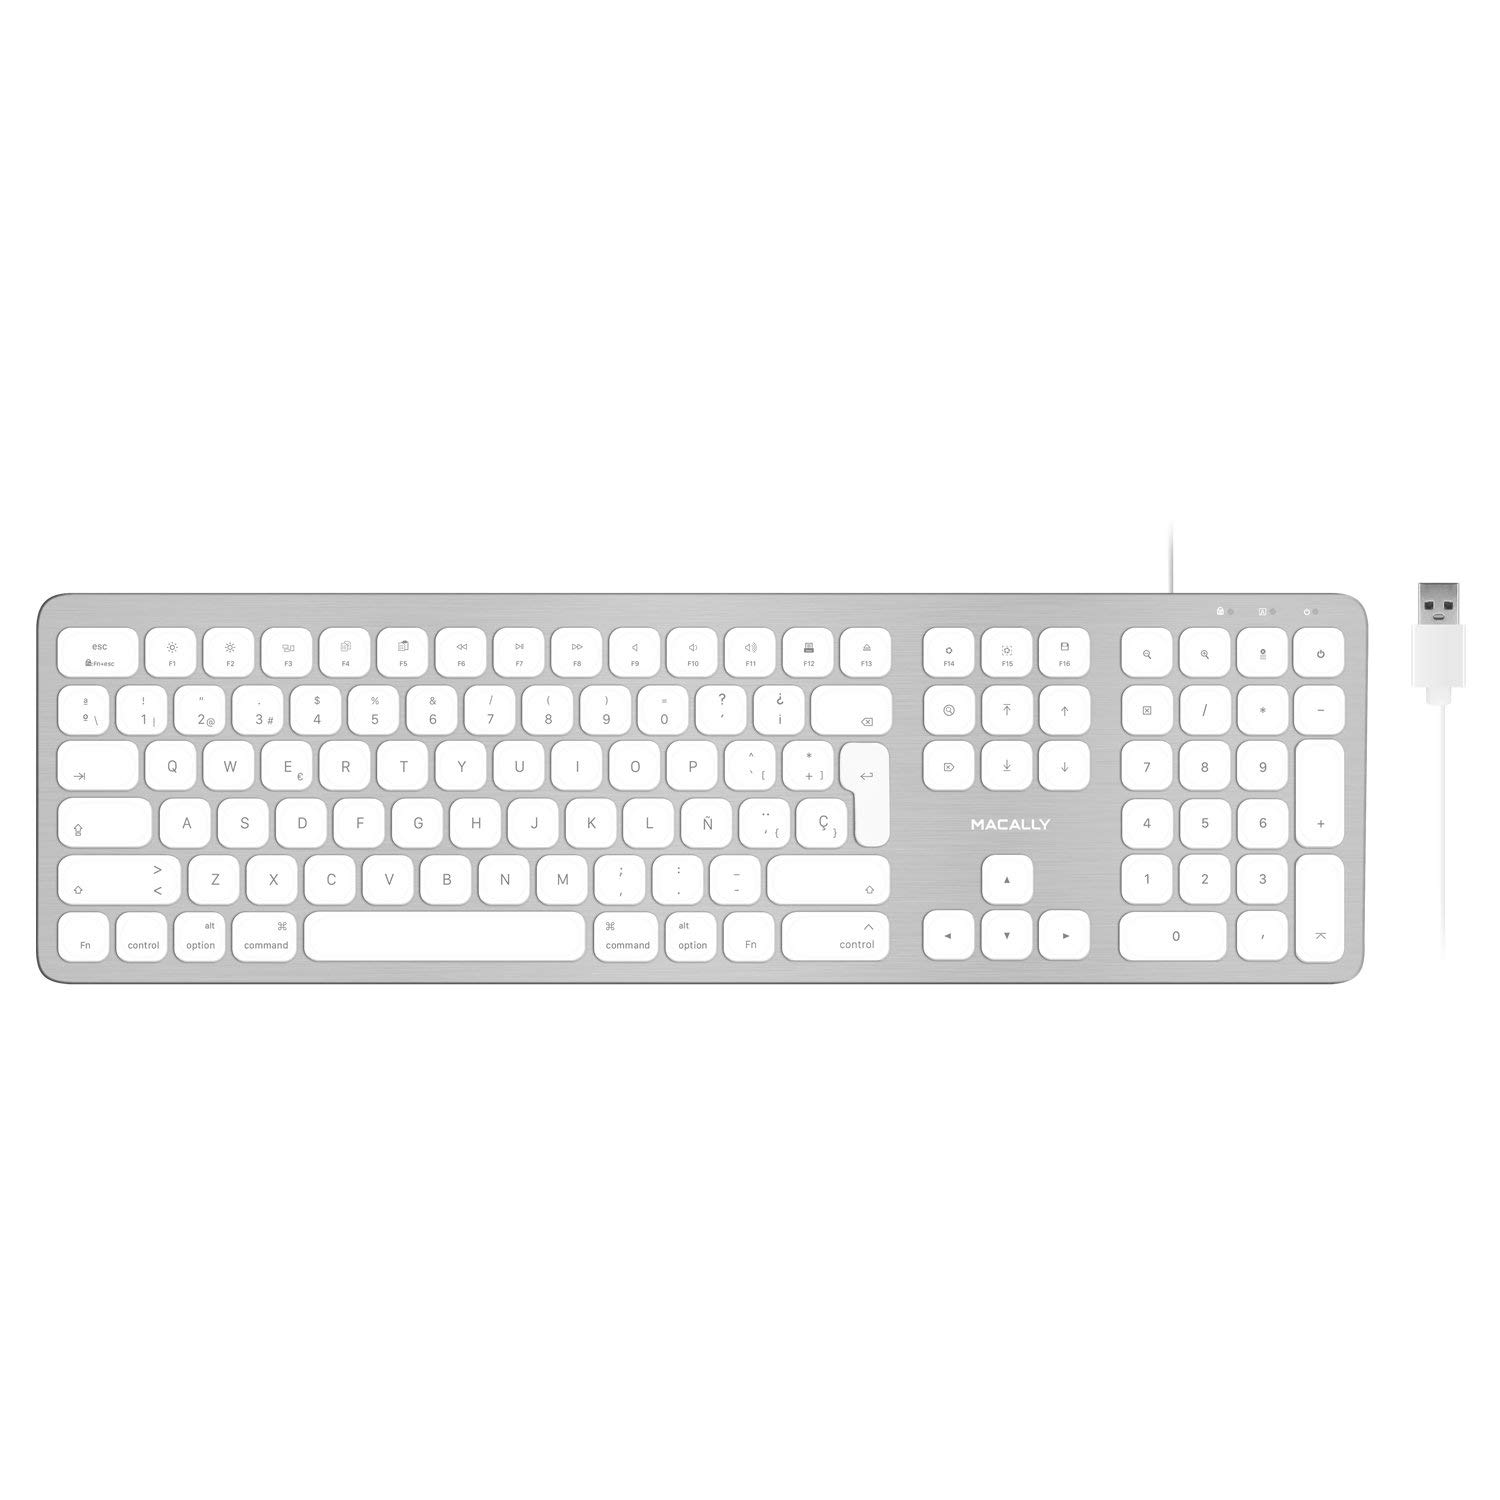 Macally WKEYHUBMB-ES, erweiterte Mac-Tastatur mit Ziffernblock, 2 USB Ports und spanischem Layout, USB-A, Alu-Design